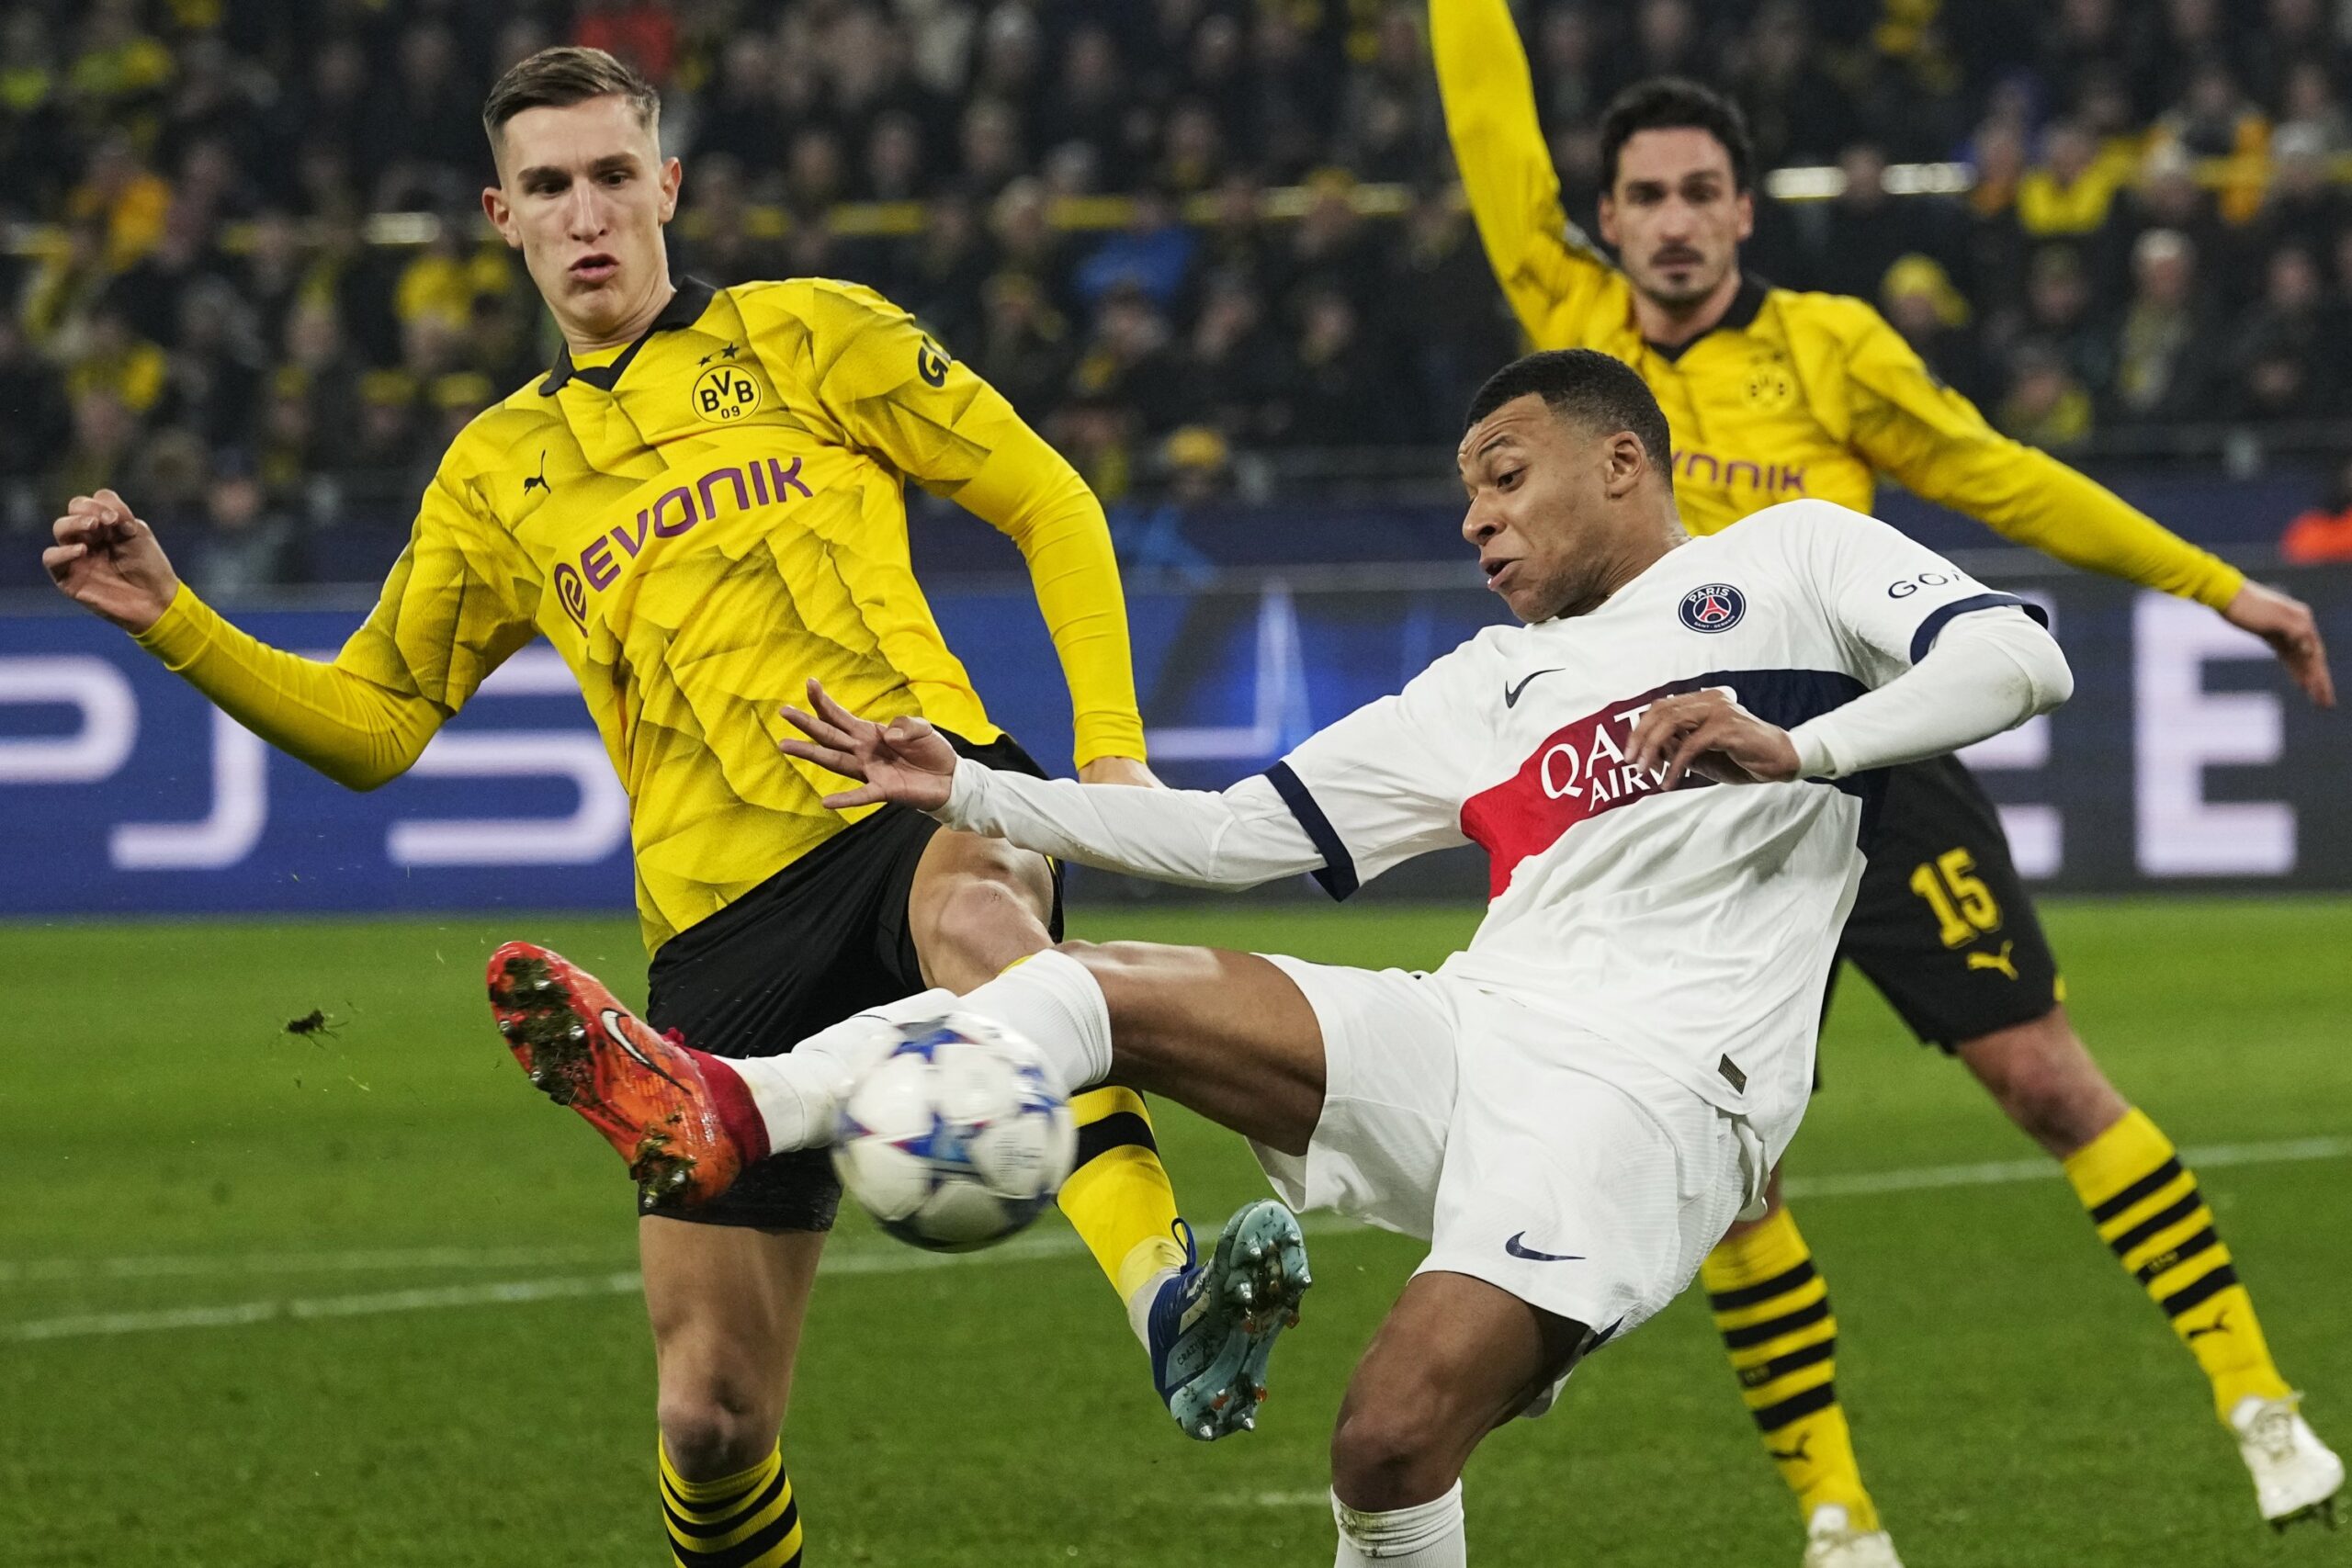 Psg-Borussia Dortmund, alle 21 torna la Champions League: ecco come vederla in streaming gratis